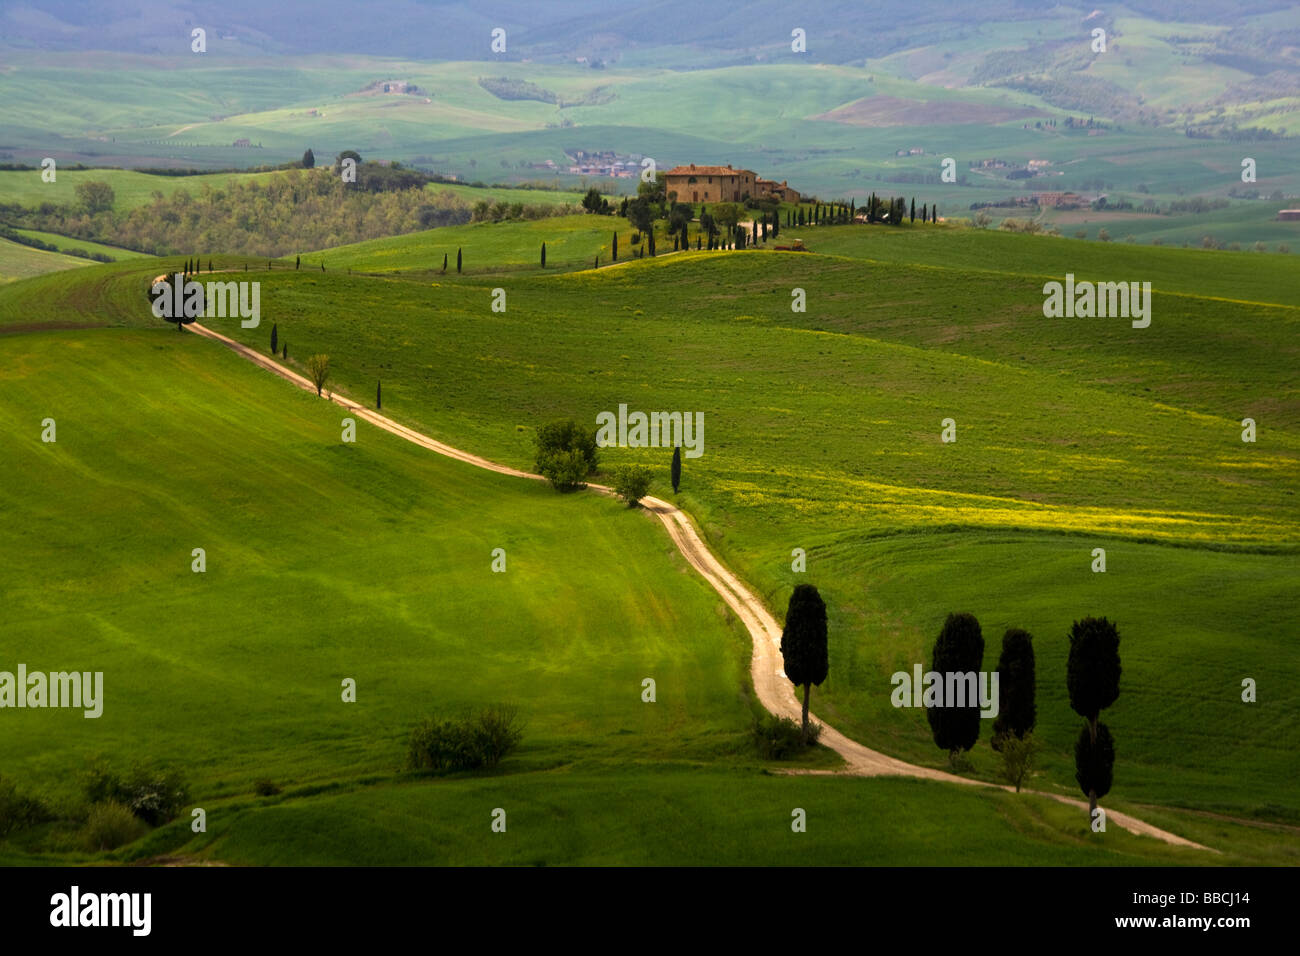 Route de campagne bordée d'arbres menant à Cypress ferme toscane typique villa dans les collines de Toscane, en Italie. Banque D'Images